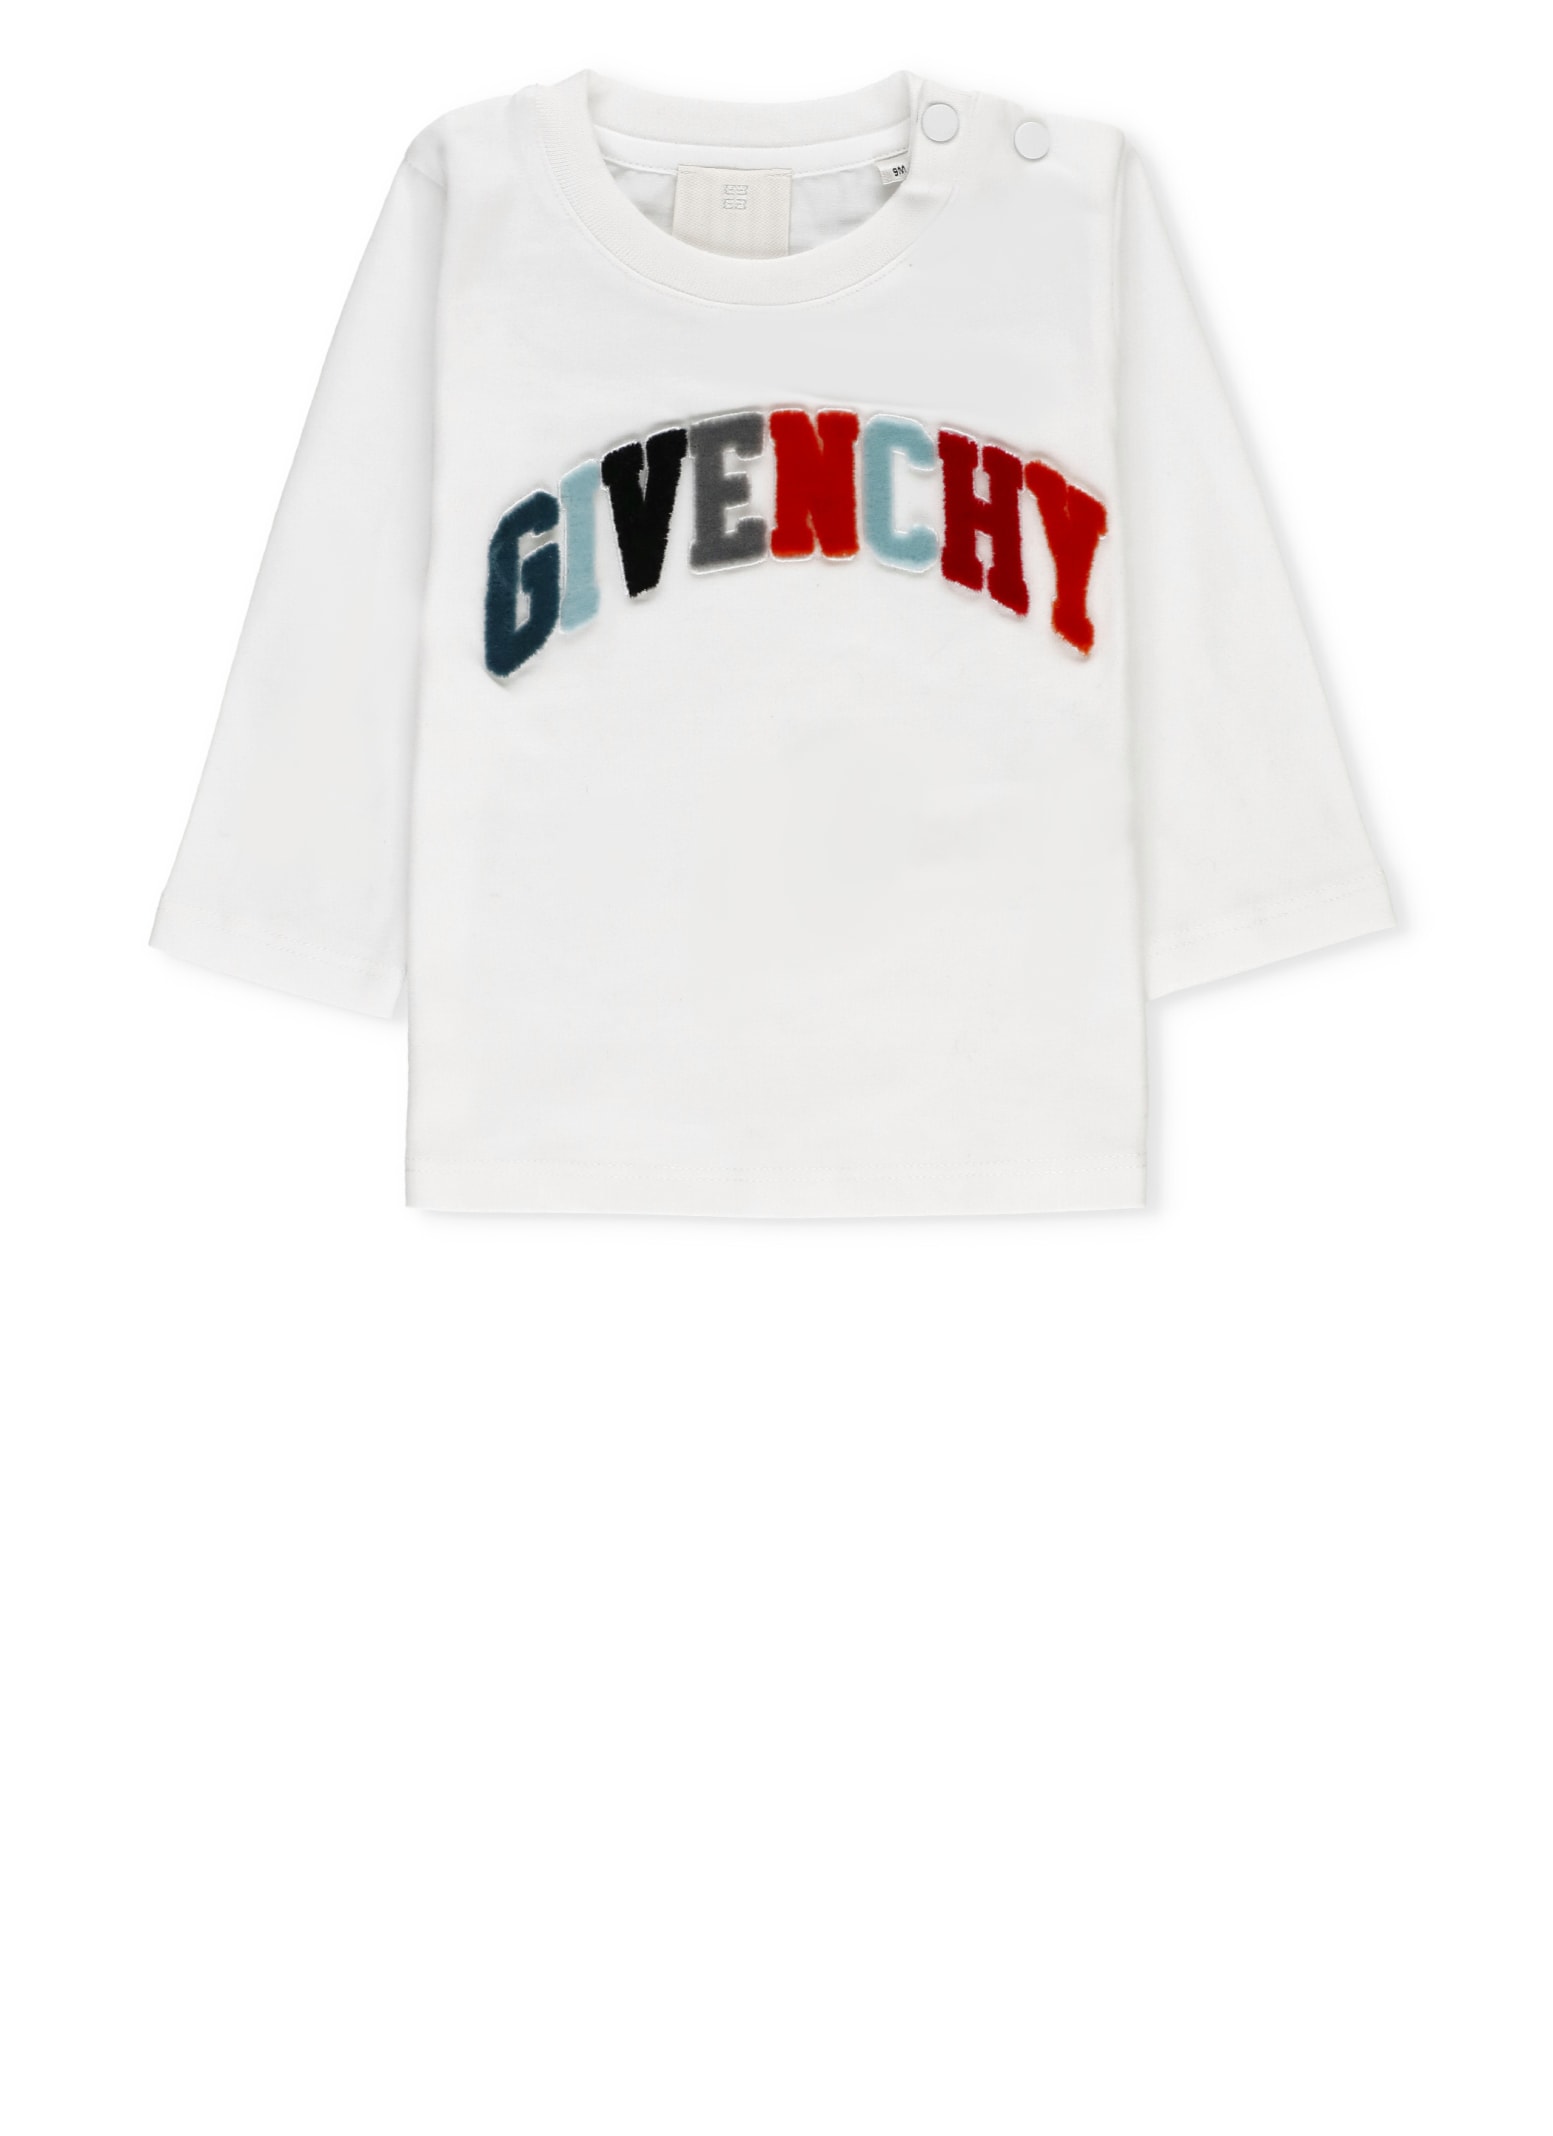 Givenchy Logoed T-shirt